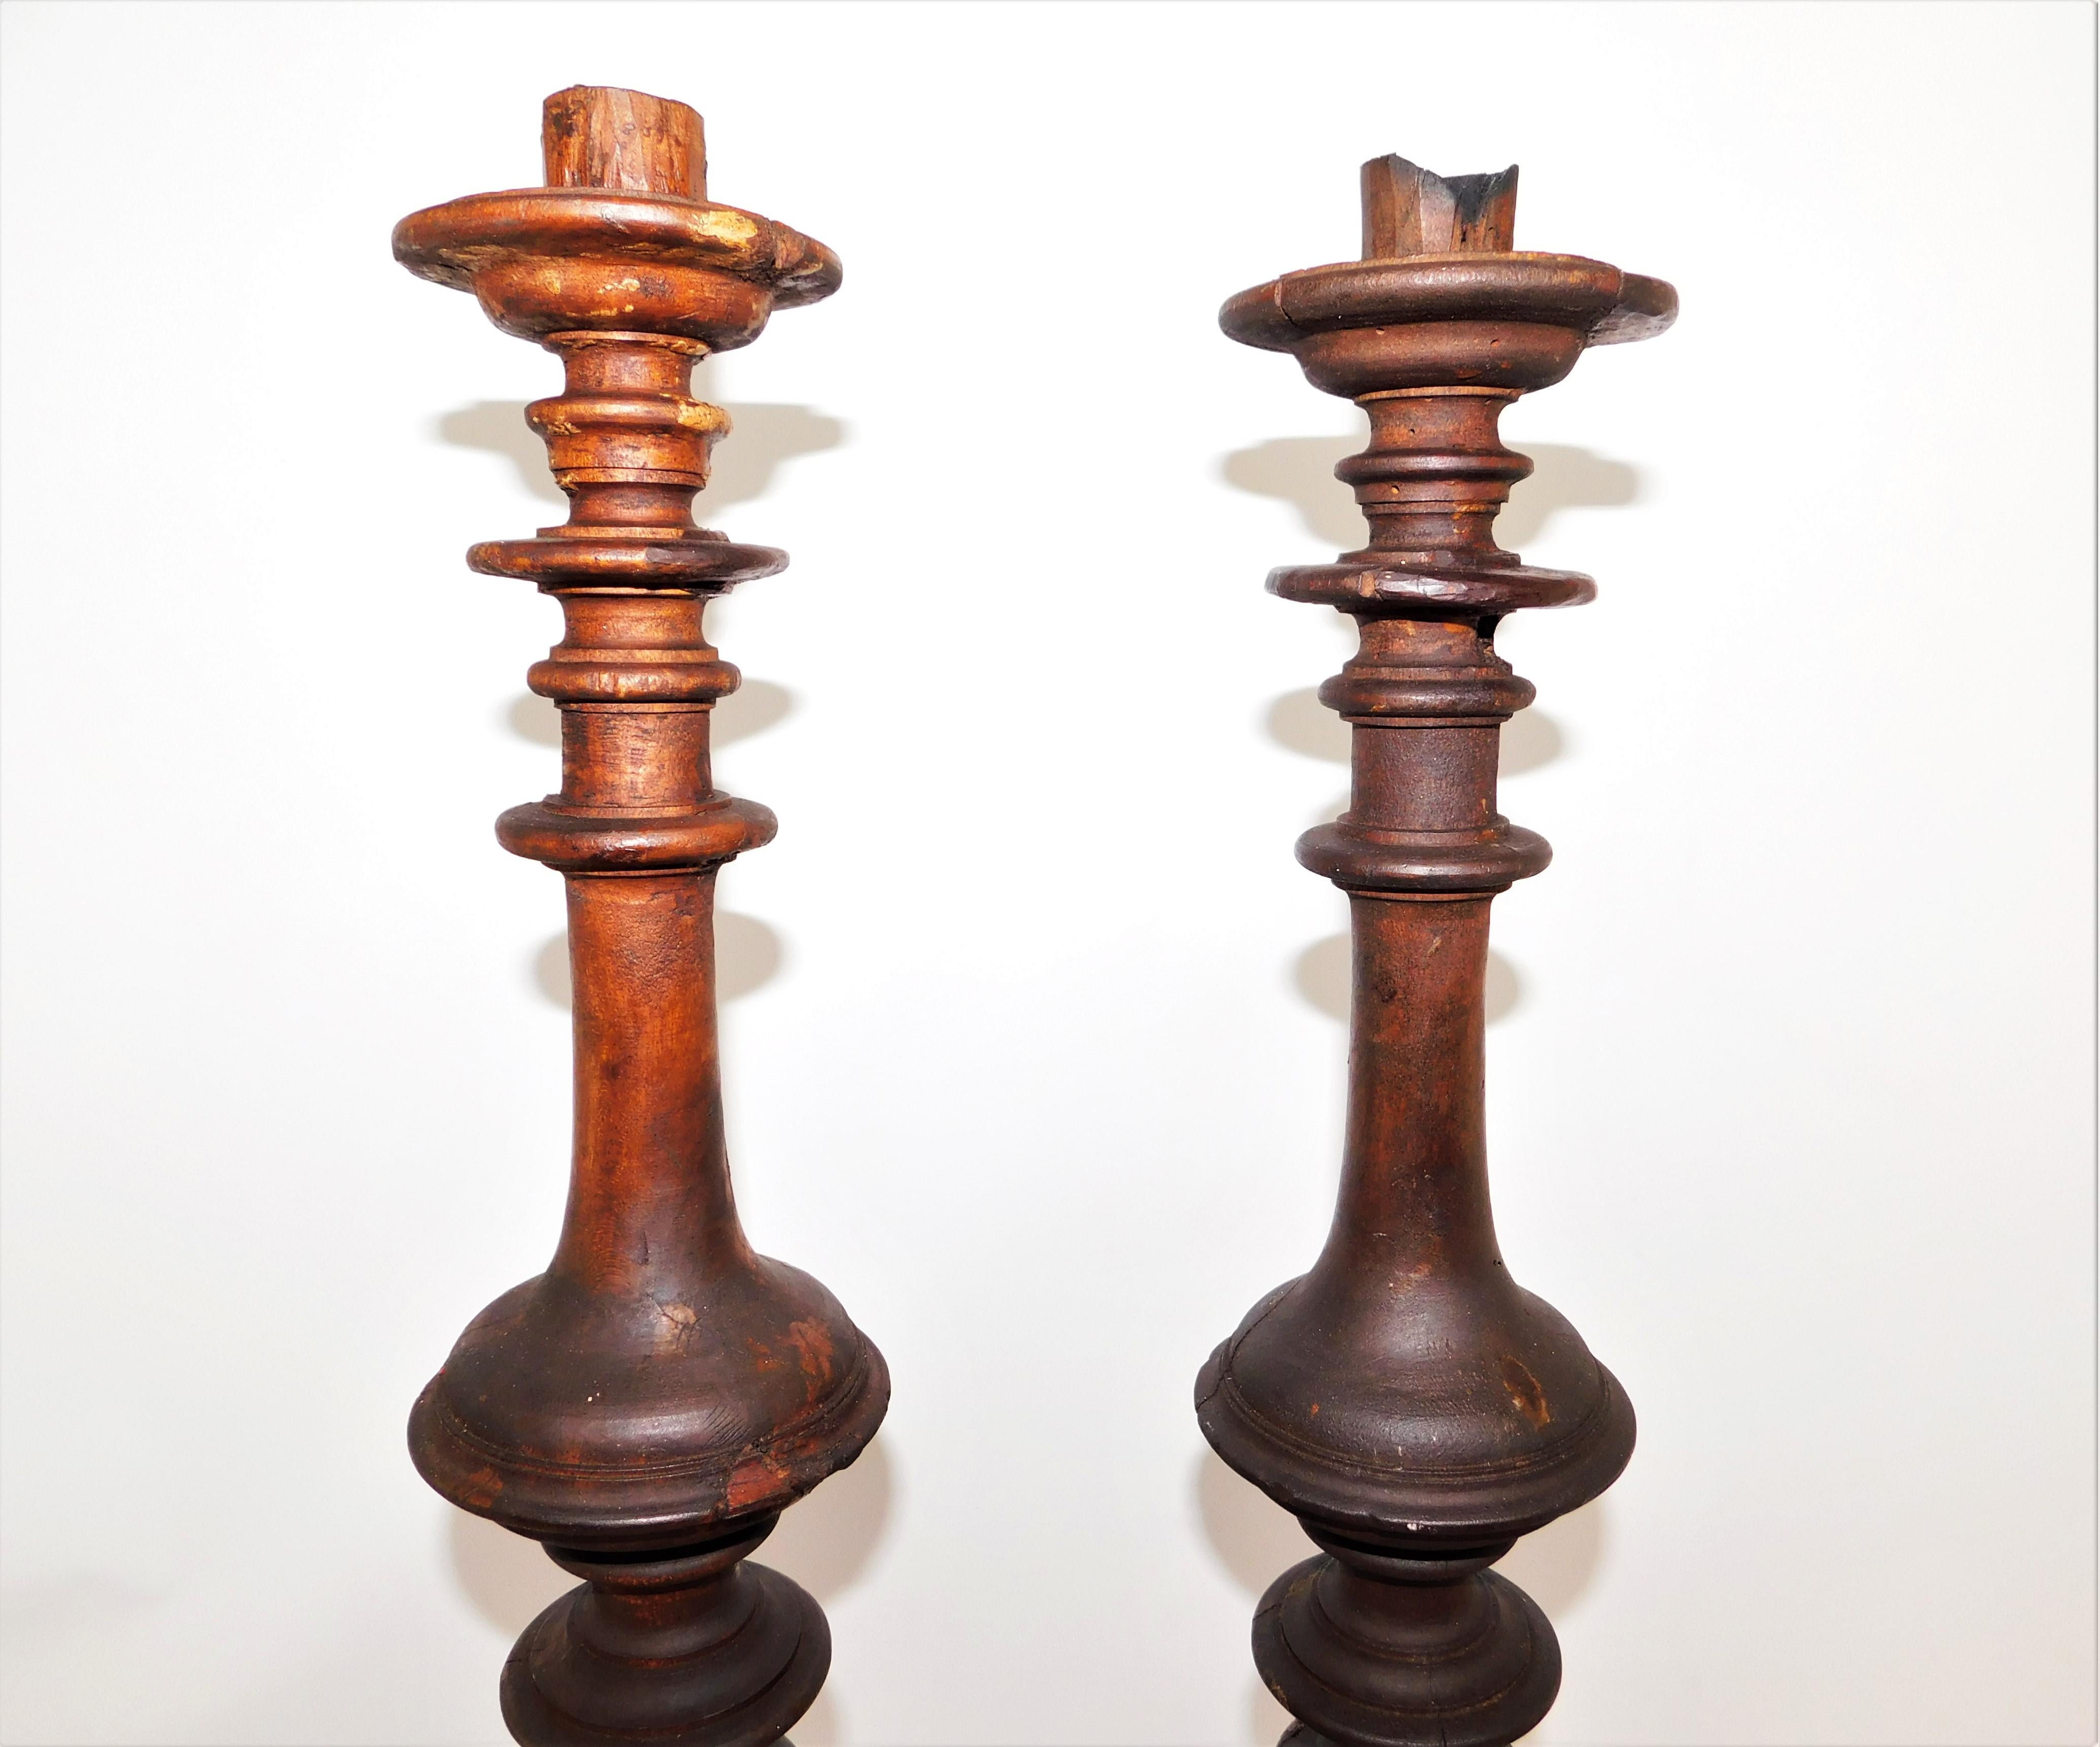 Paire de grands chandeliers en bois rustique traditionnel du milieu du XIXe siècle. Sculpté à la main par un fabricant inconnu, européen. En état d'origine, usure conforme à l'âge et à l'utilisation, préservant une belle patine de ces chandeliers